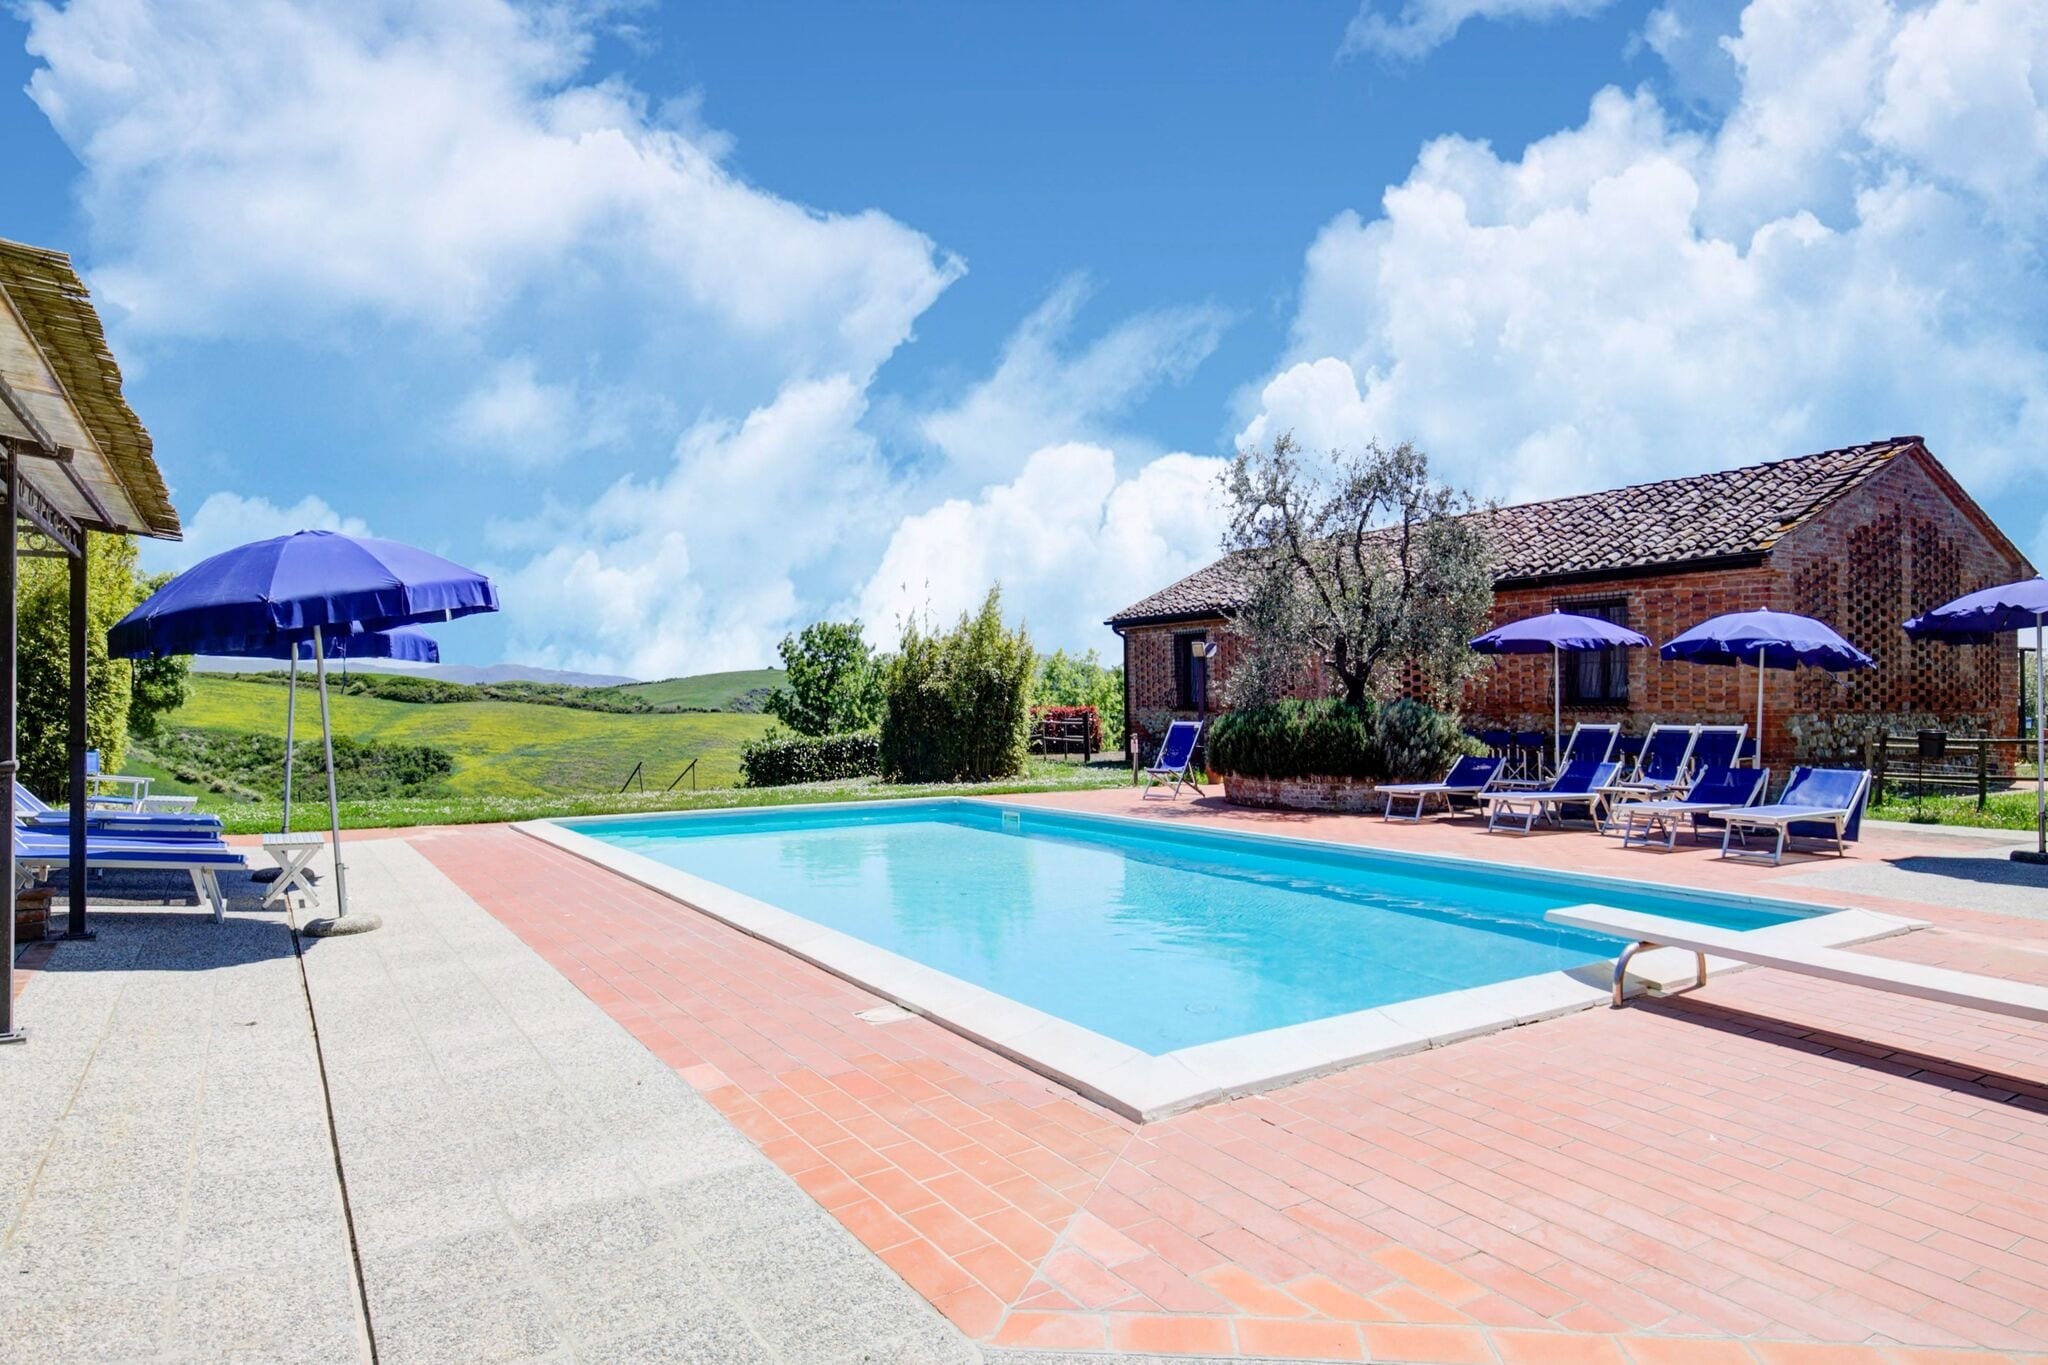 Wohnung in einem typisch toskanischen Bauernhaus mit Schwimmbad